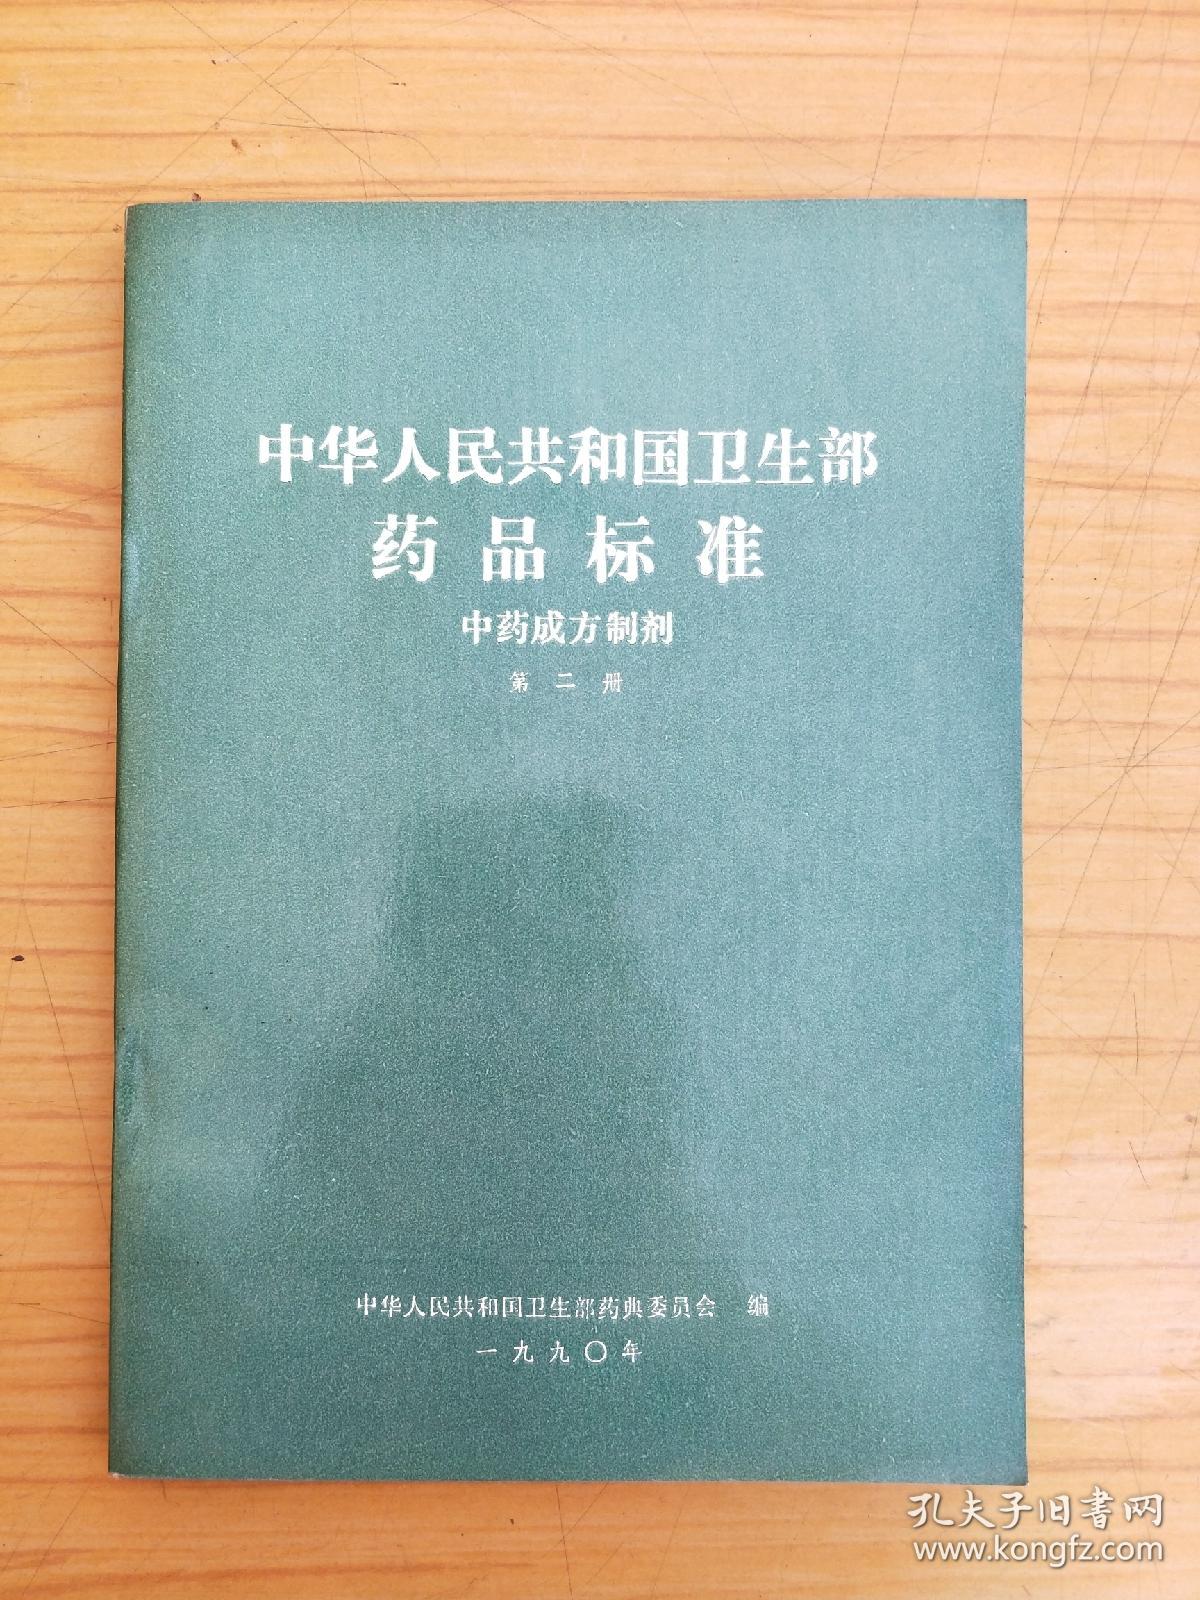 中华人民共和国卫生部药品标准 中药成方制剂 第二册